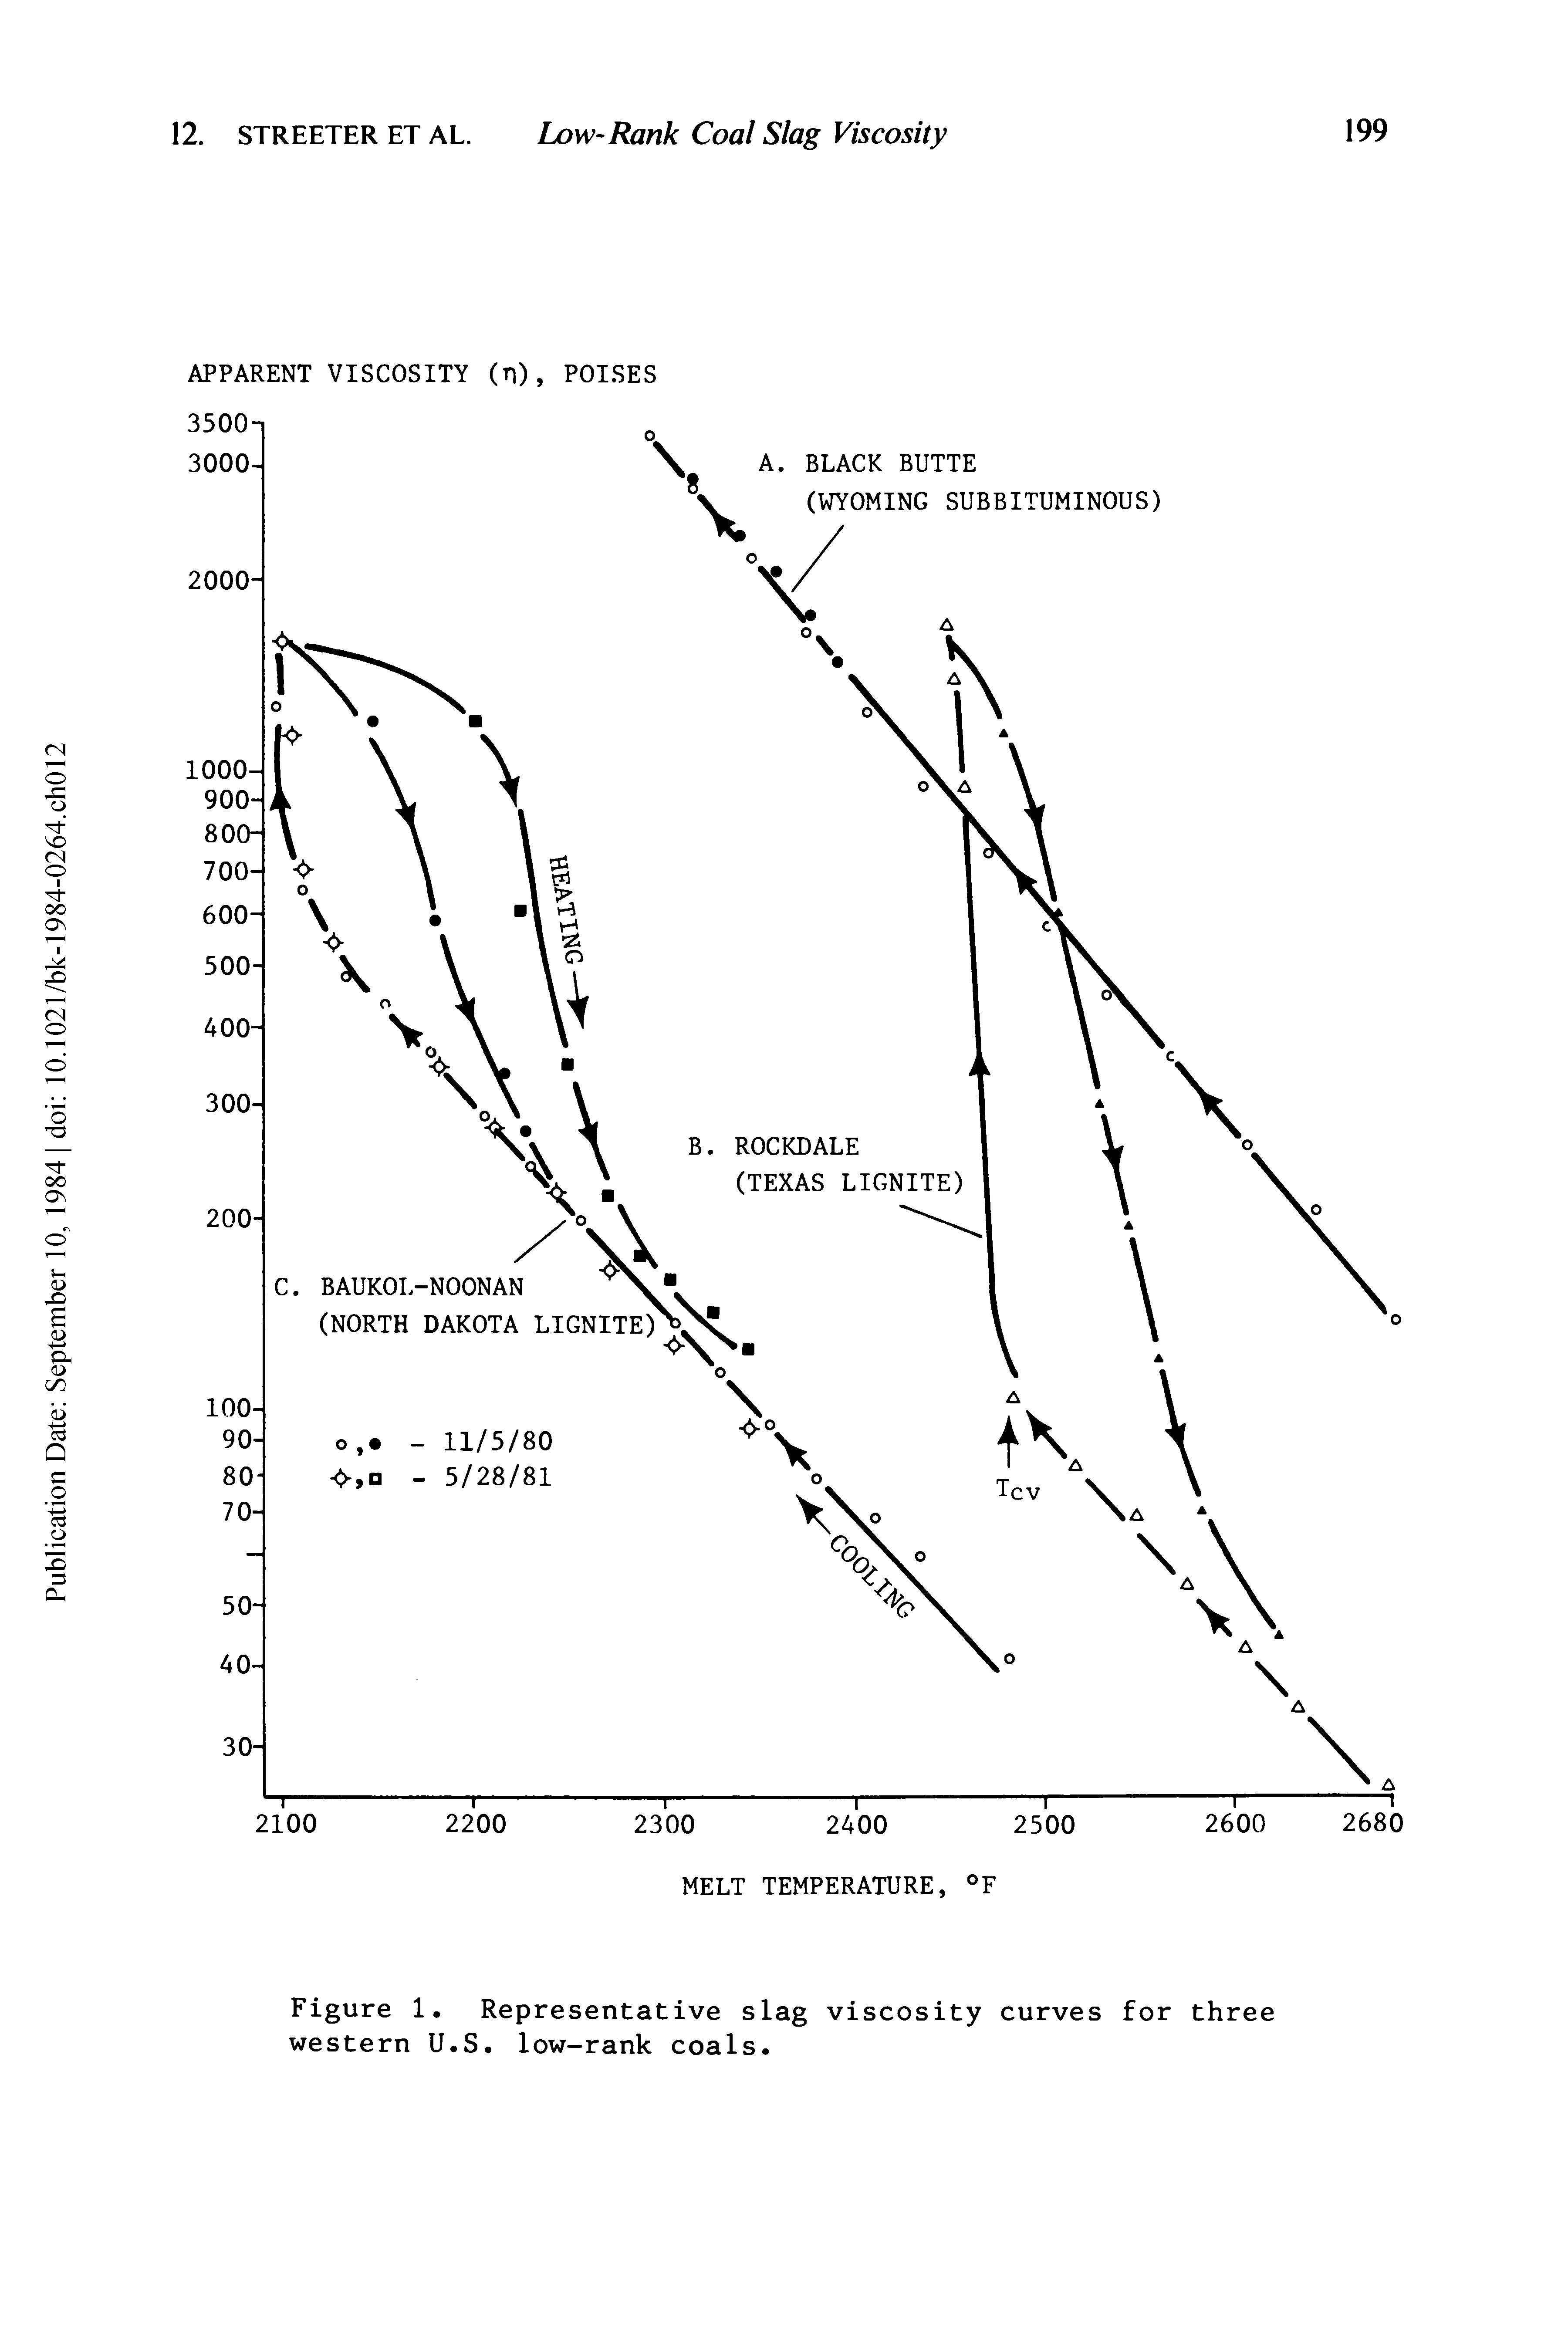 Figure 1. Representative slag viscosity curves for three western U.S. low-rank coals.